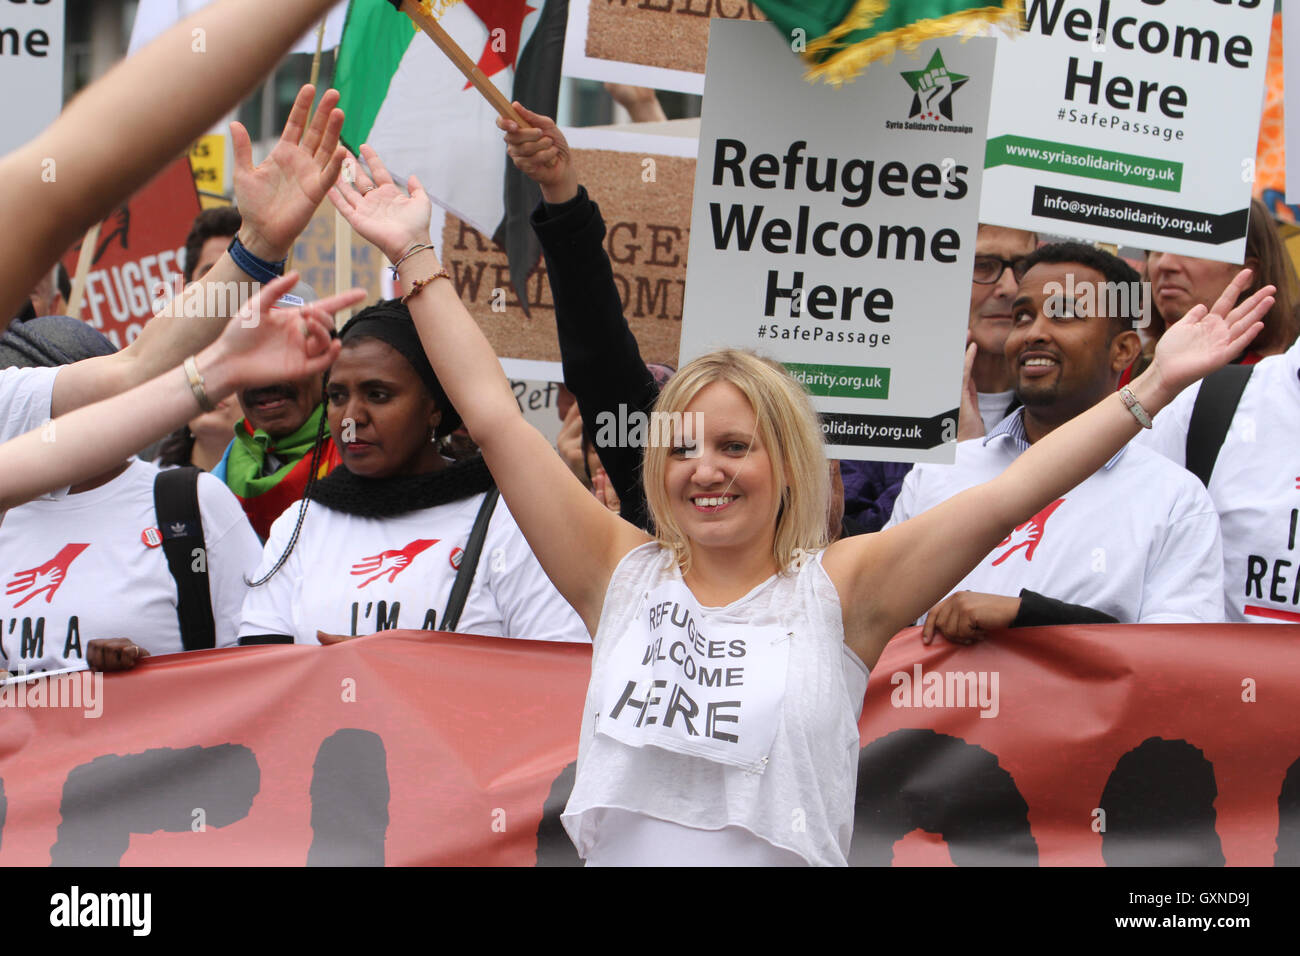 LONDON, UK - 17.September: Unterhalten gesehen vor dem Marsch von Tausenden von Menschen Marsch durch London zur Solidarität mit Flüchtlingen am 1. 7. September 2016. Der Marsch vom Hyde Park, Parliament Square folgt Berichte über die vielen Menschen verloren ihr Leben, darunter einen kleiner Junge Aylan Kurdi aus ihren Krieg zerrissenen Ländern für die Sicherheit in Europa zu fliehen versucht. Letztes Jahr stimmte die Regierung, 20.000 syrische Flüchtlinge neu anzusiedeln. Bildnachweis: David Mbiyu/Alamy Live-Nachrichten Stockfoto